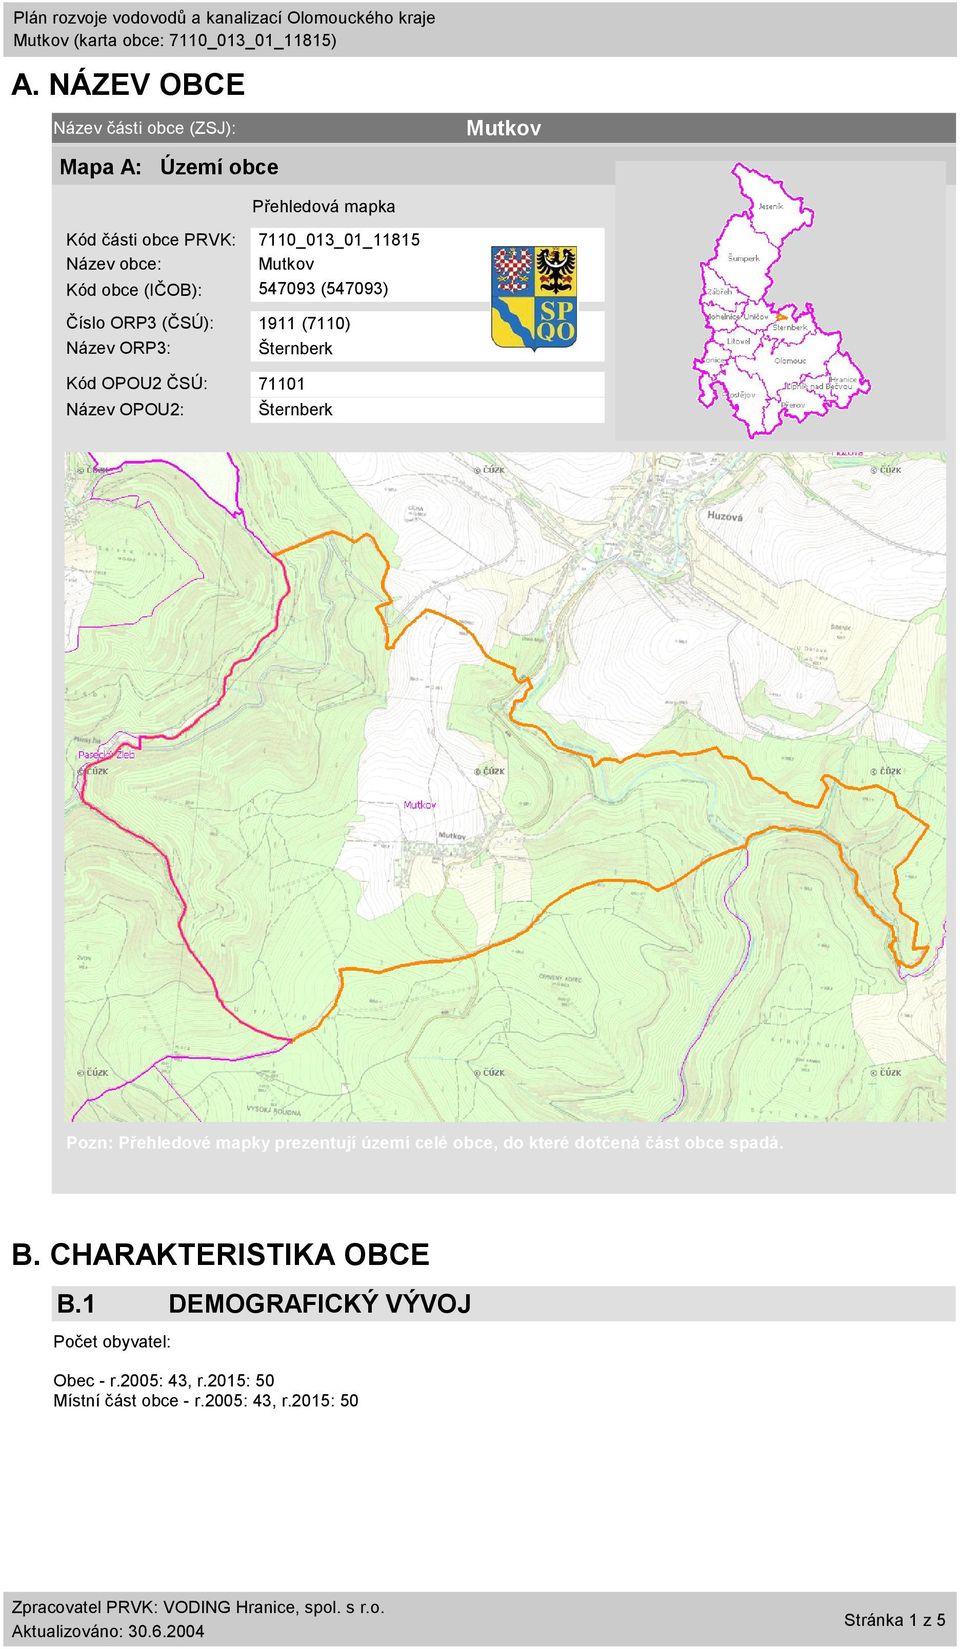 OPOU2: Šternberk Pozn: Přehledové mapky prezentují území celé obce, do které dotčená část obce spadá. B.